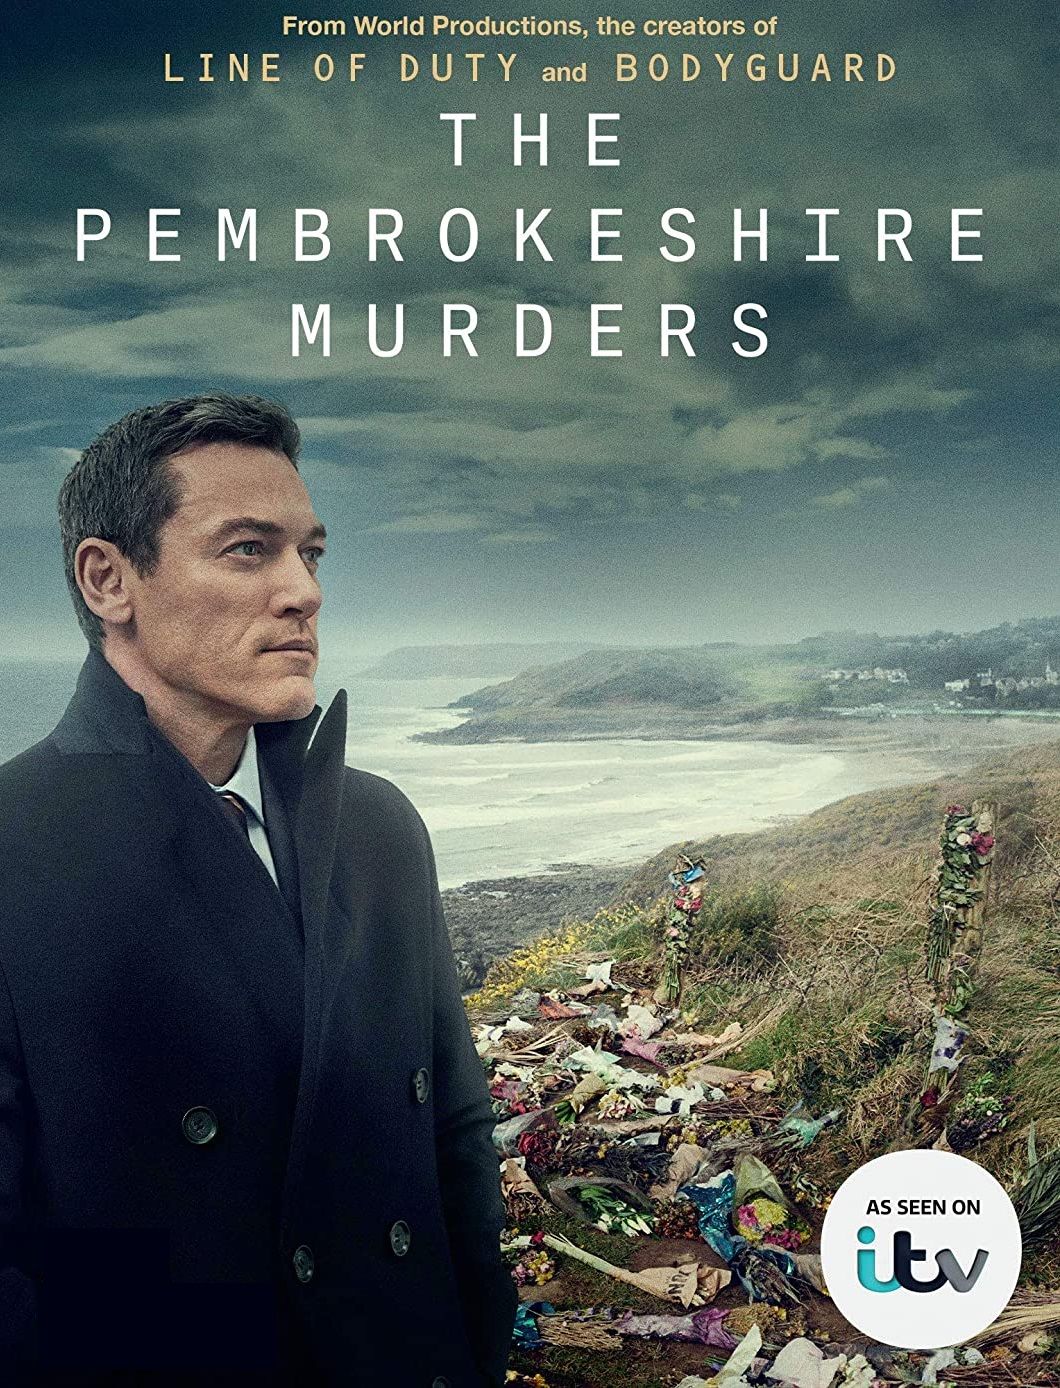 ดูหนังออนไลน์ฟรี THE PEMBROKESHIRE MURDERS – เดอะ เพมโบรกเชอร์ เมอร์เดอร์ส